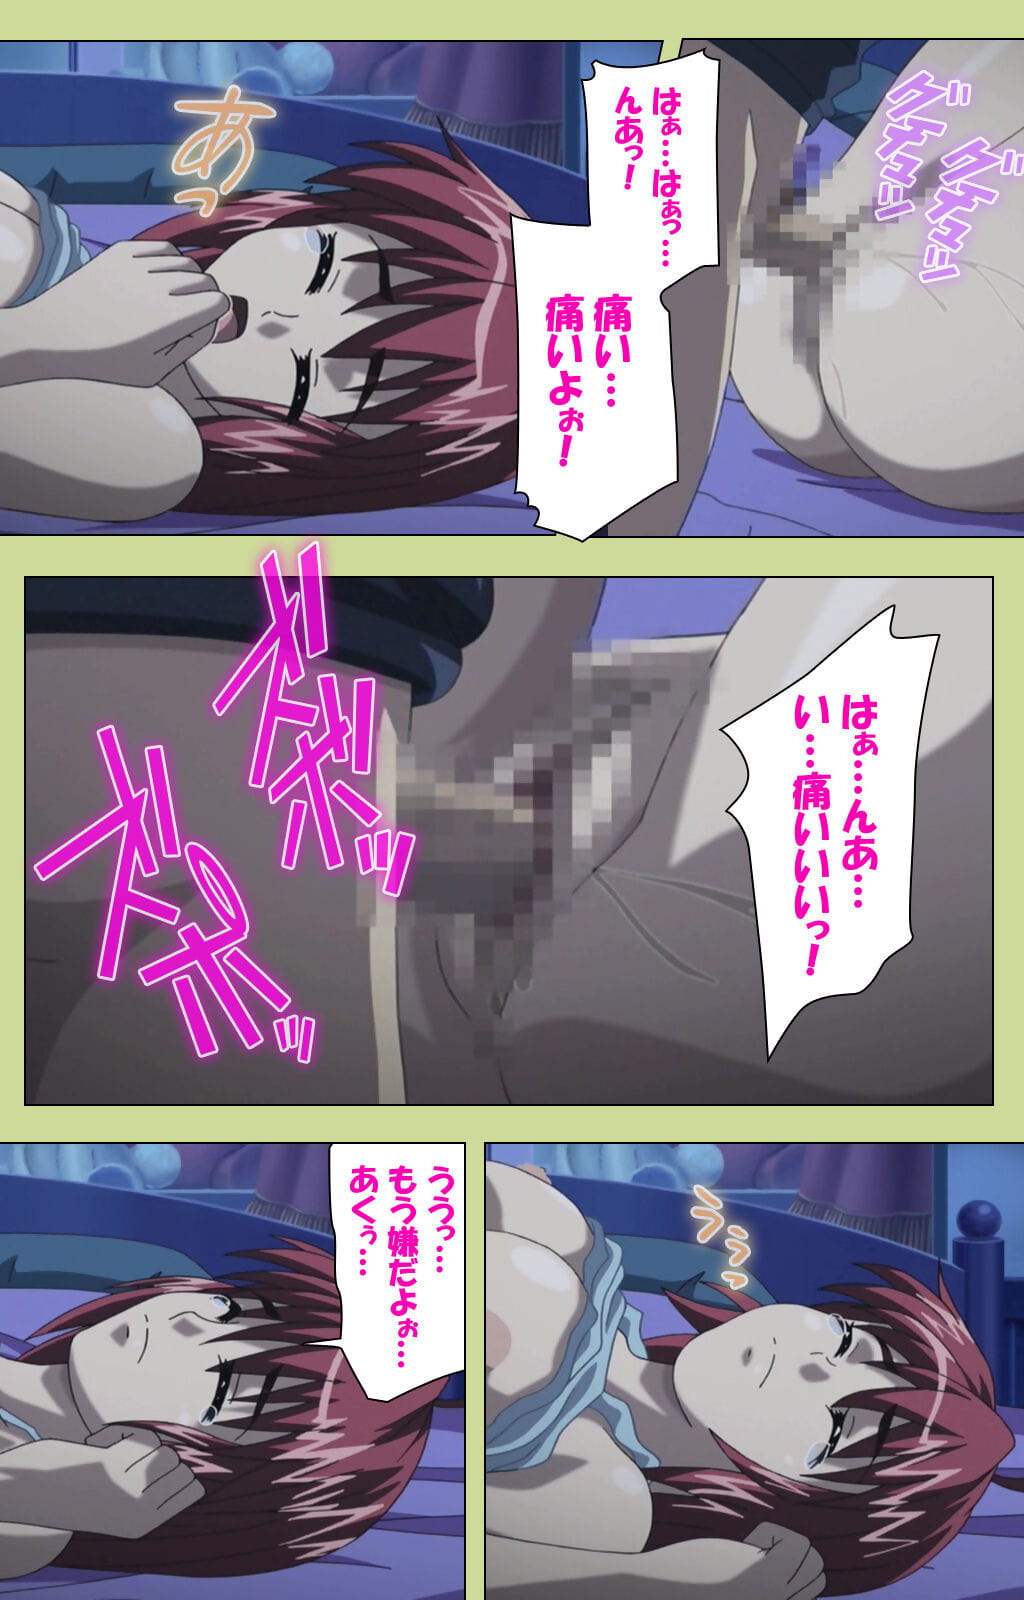 lune :हास्य: पूरा रंग seijin प्रतिबंध समलिंगी स्त्रियां gakuen विशेष पूरा प्रतिबंध हिस्सा 2